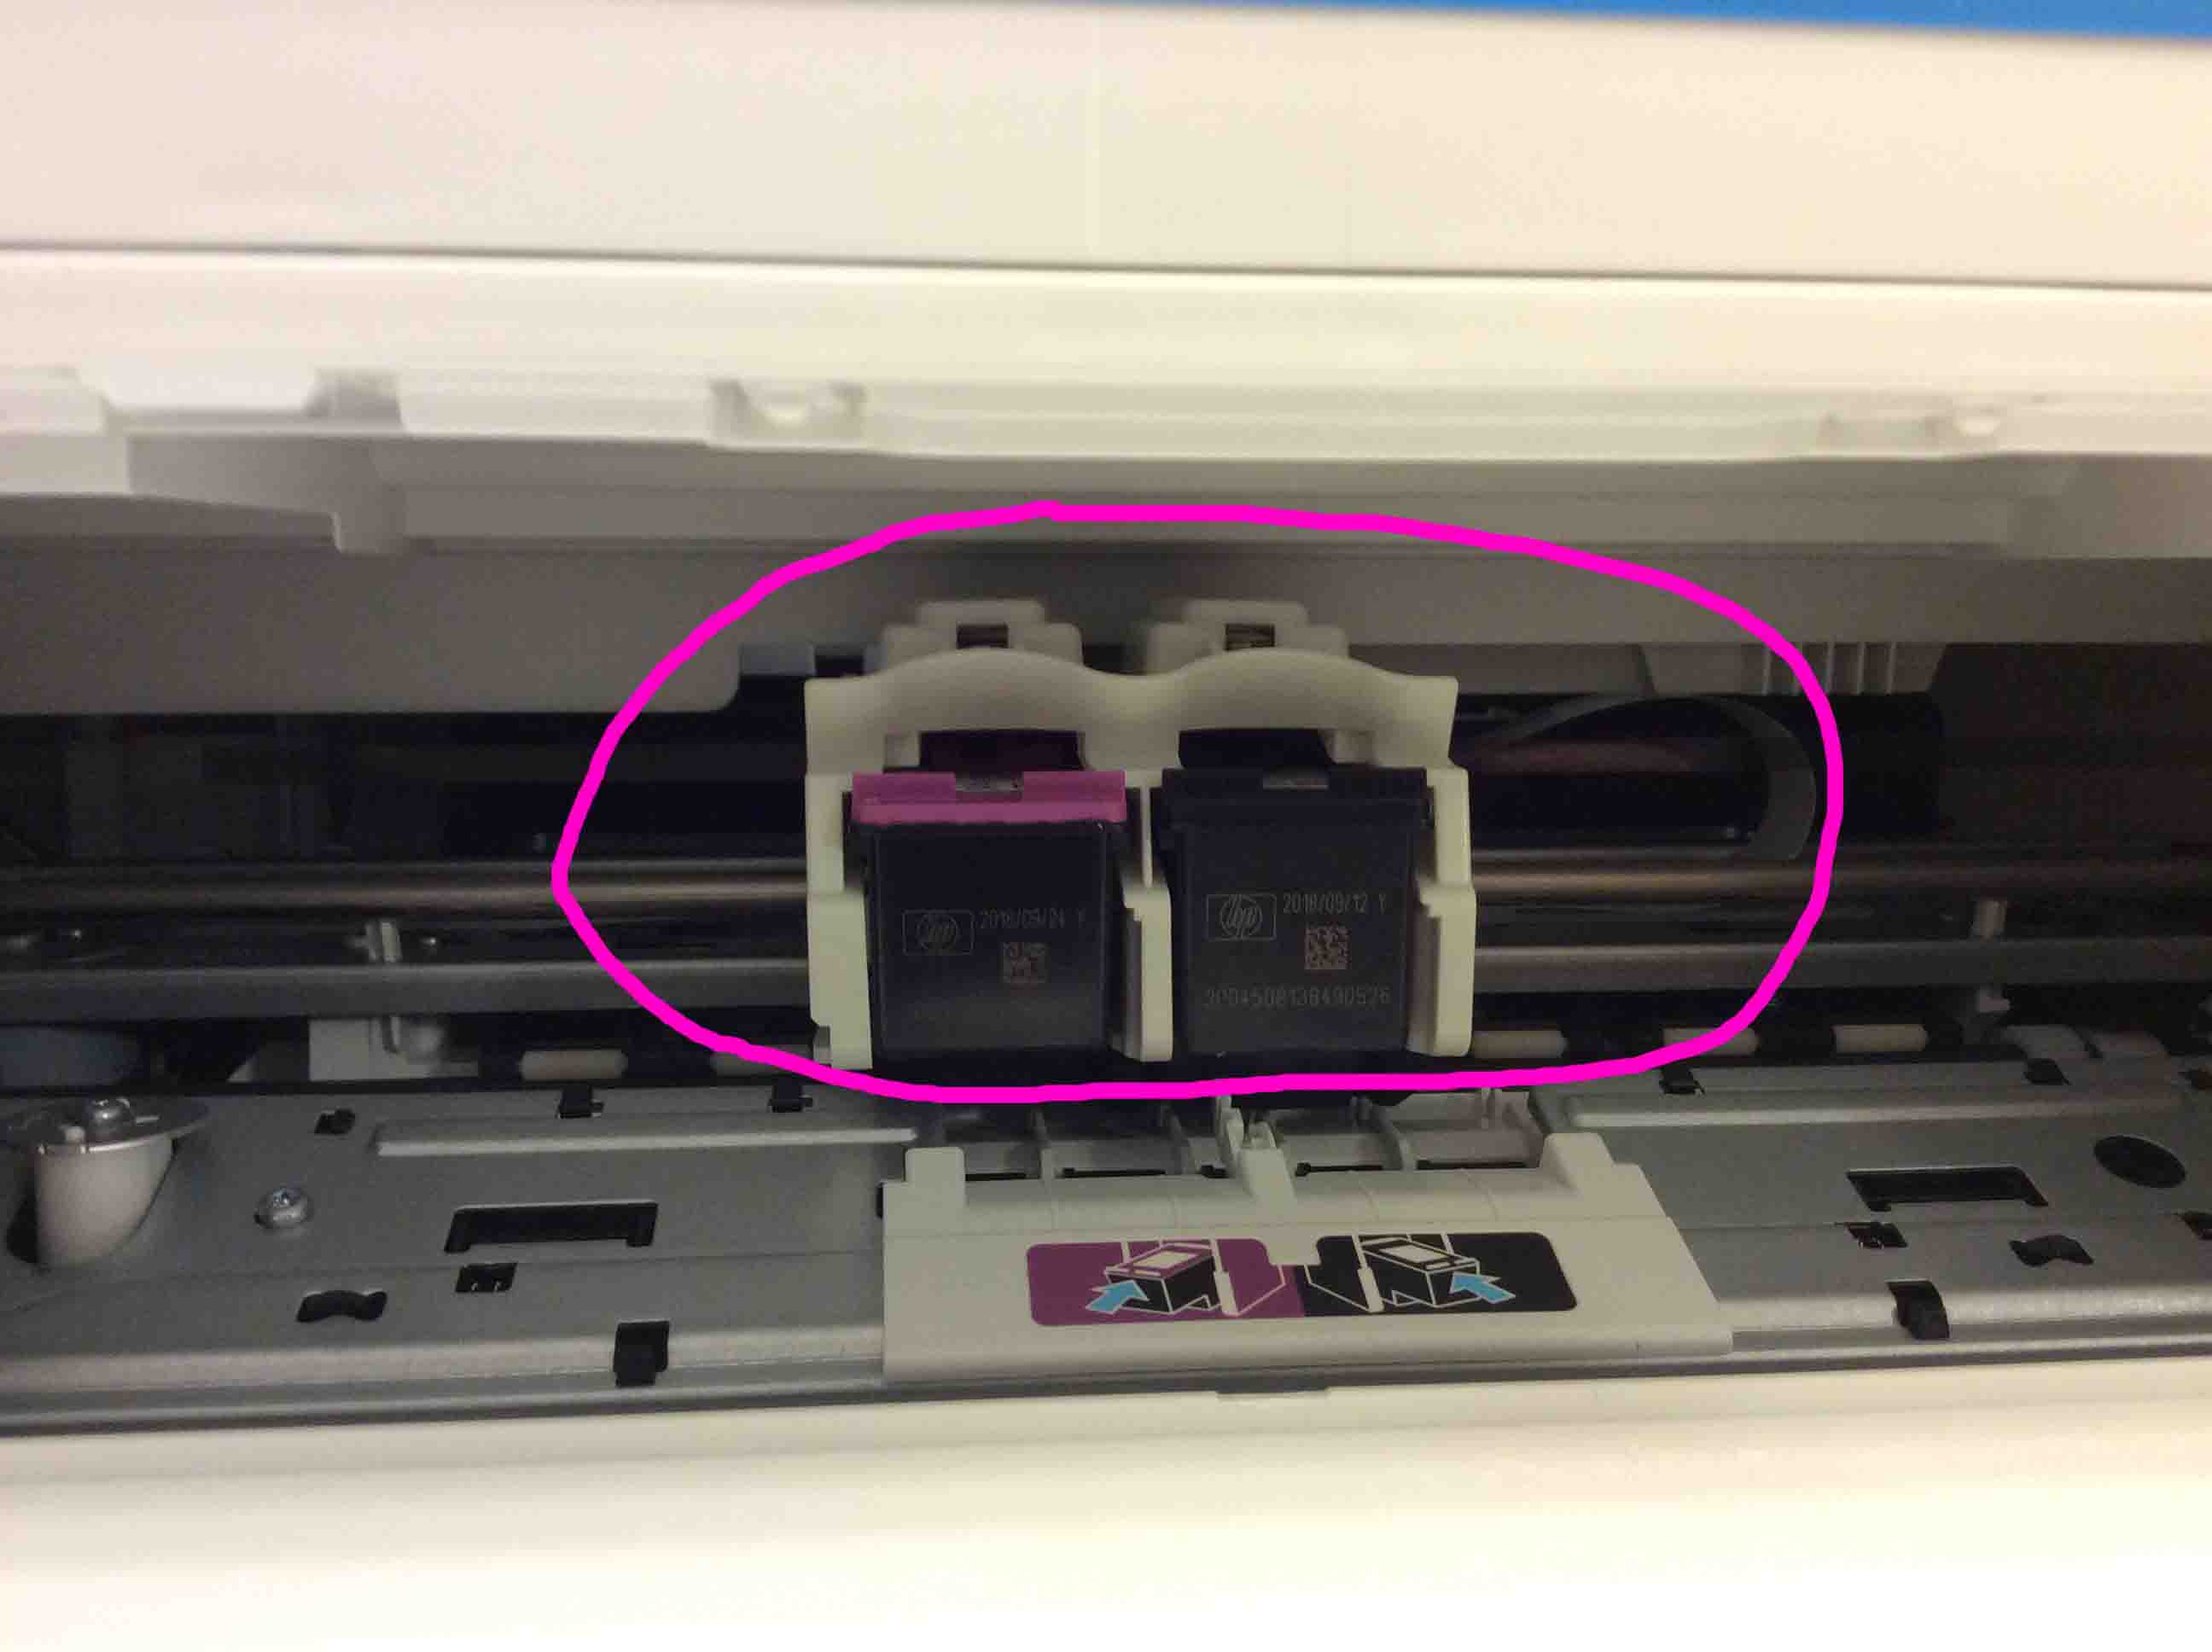 How to Install DeskJet 3630 Series WiFi Printer - Tom's Tek Stop